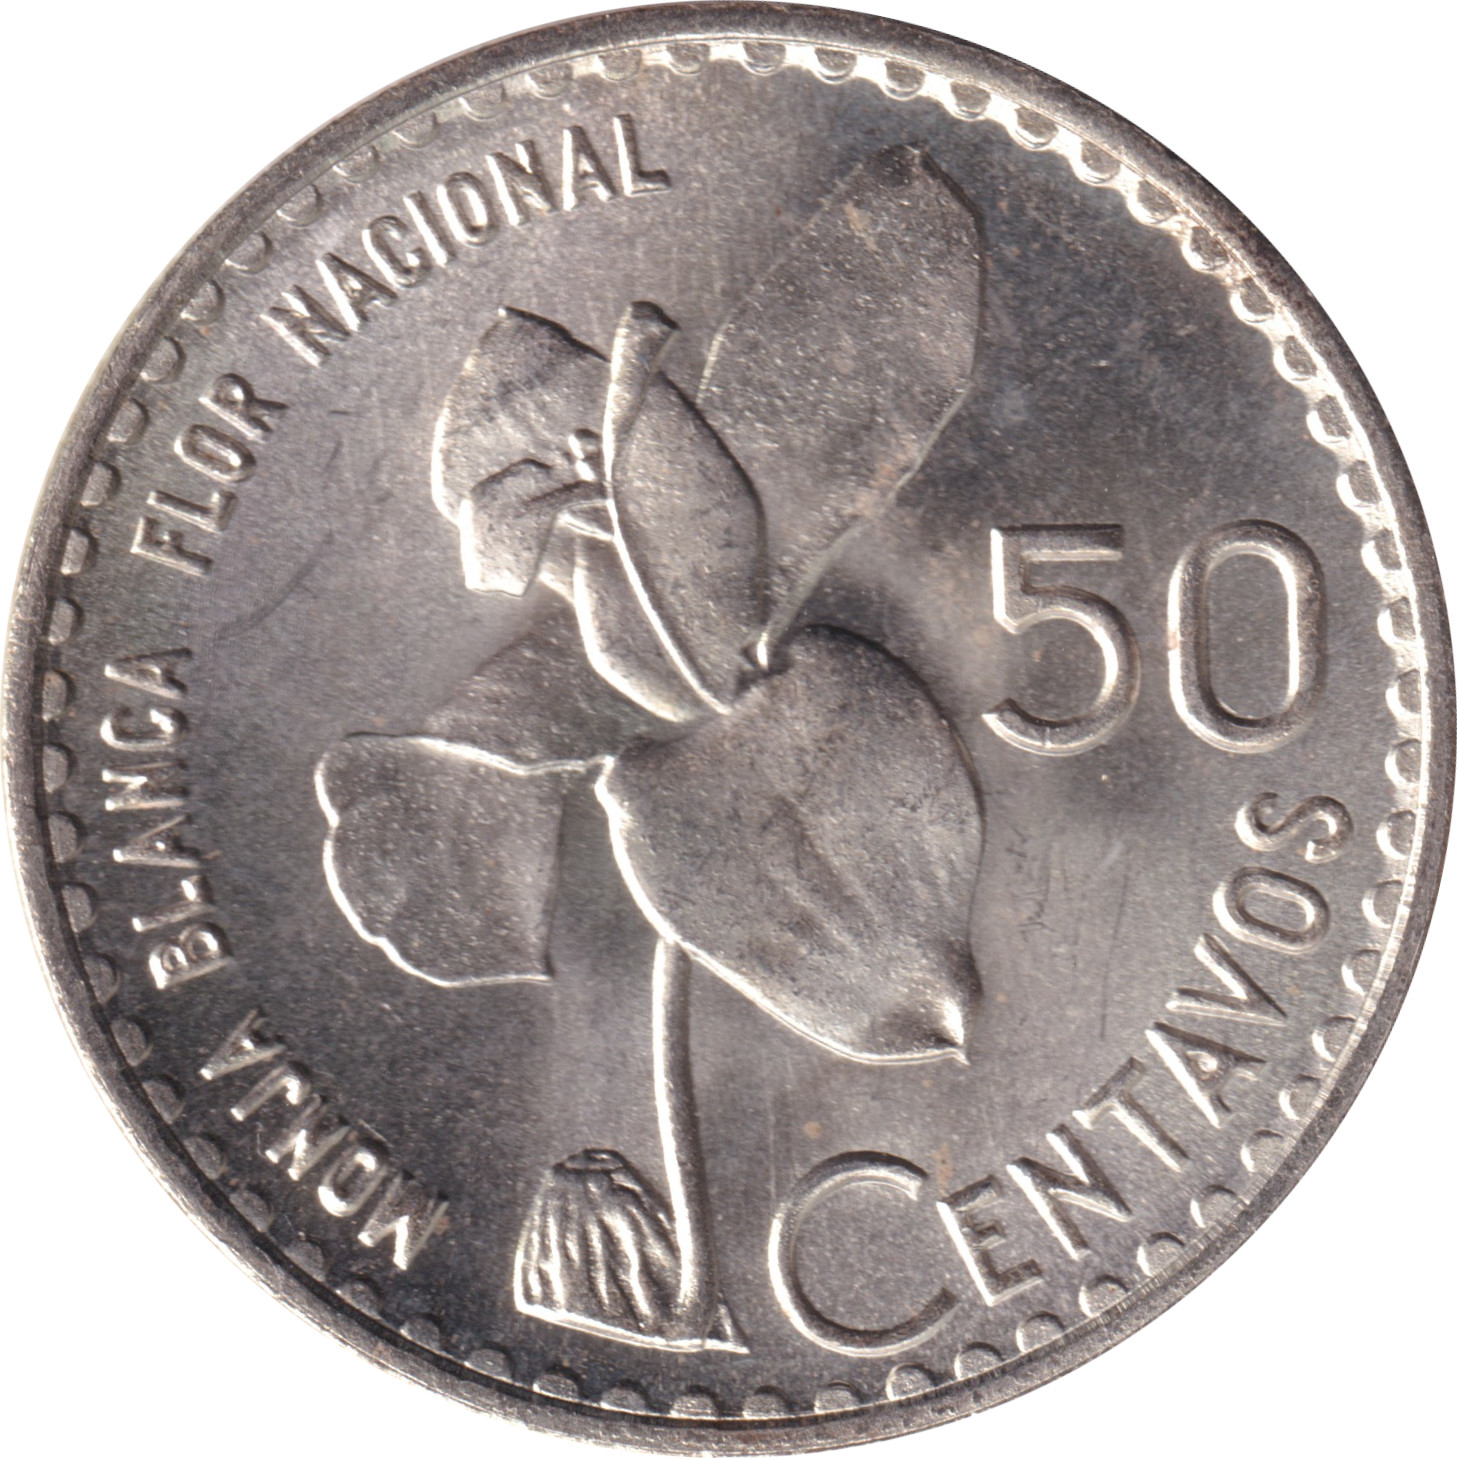 50 centavos - Emblème - Type lourd